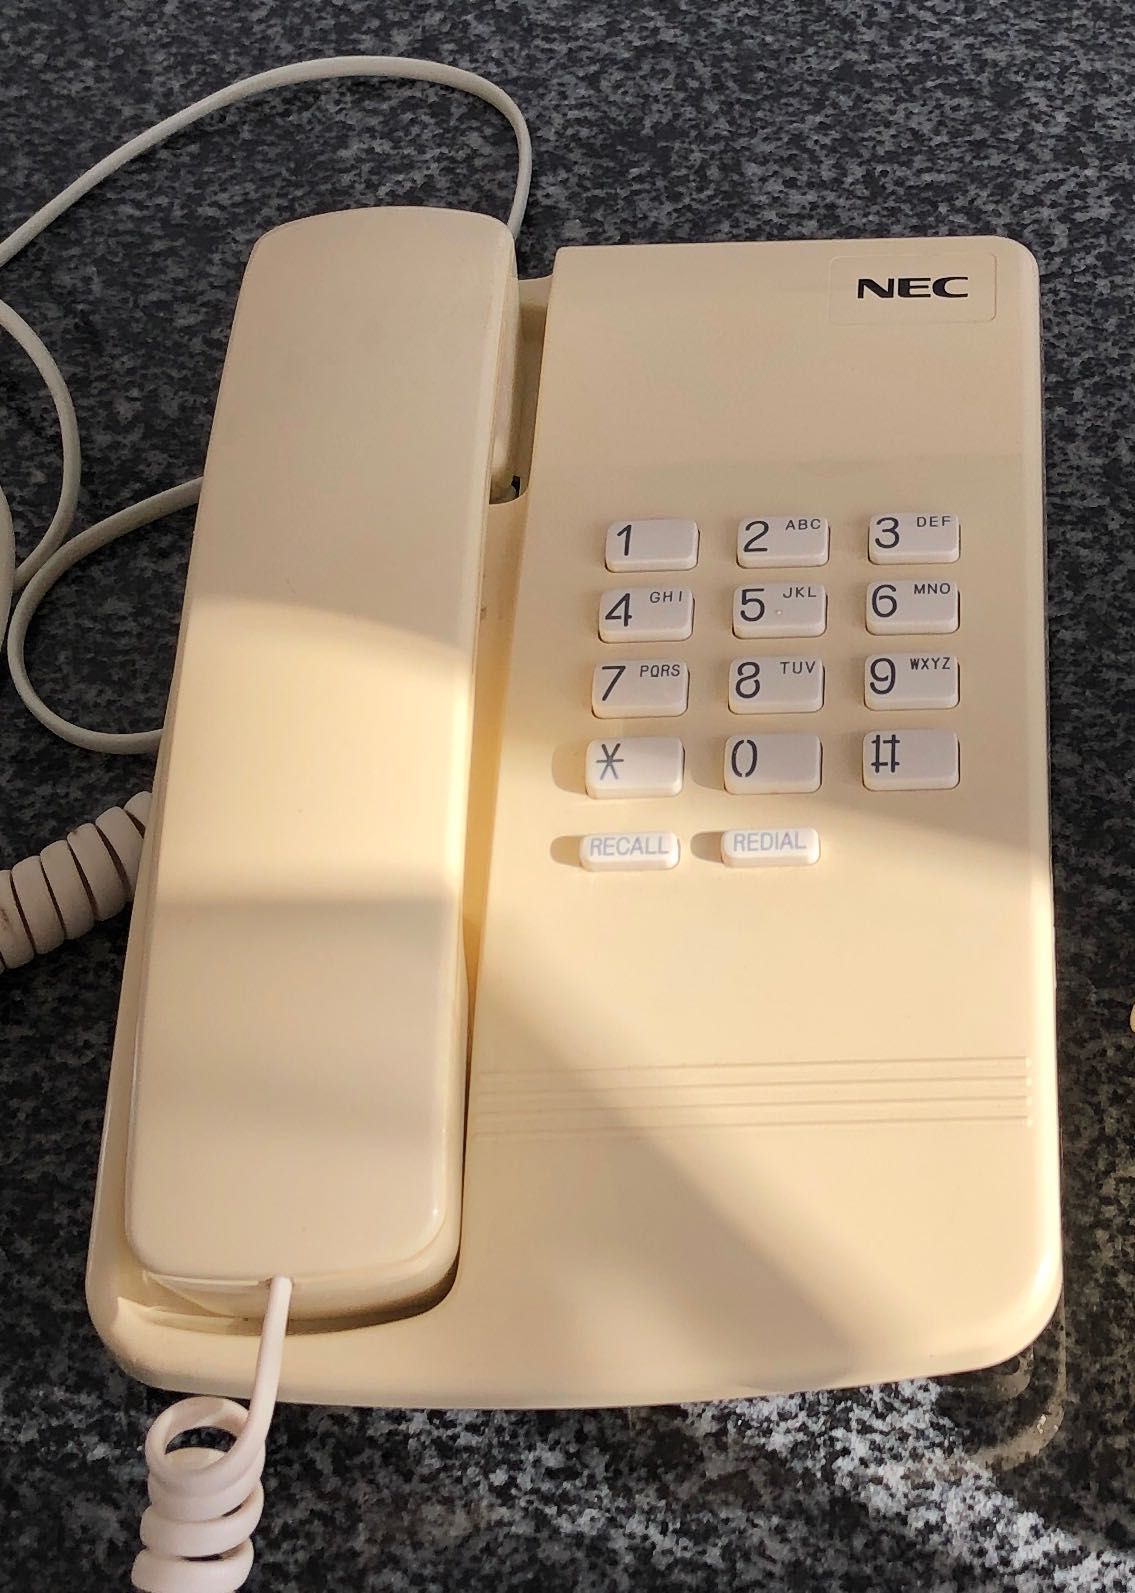 2 telefones fixos NEC